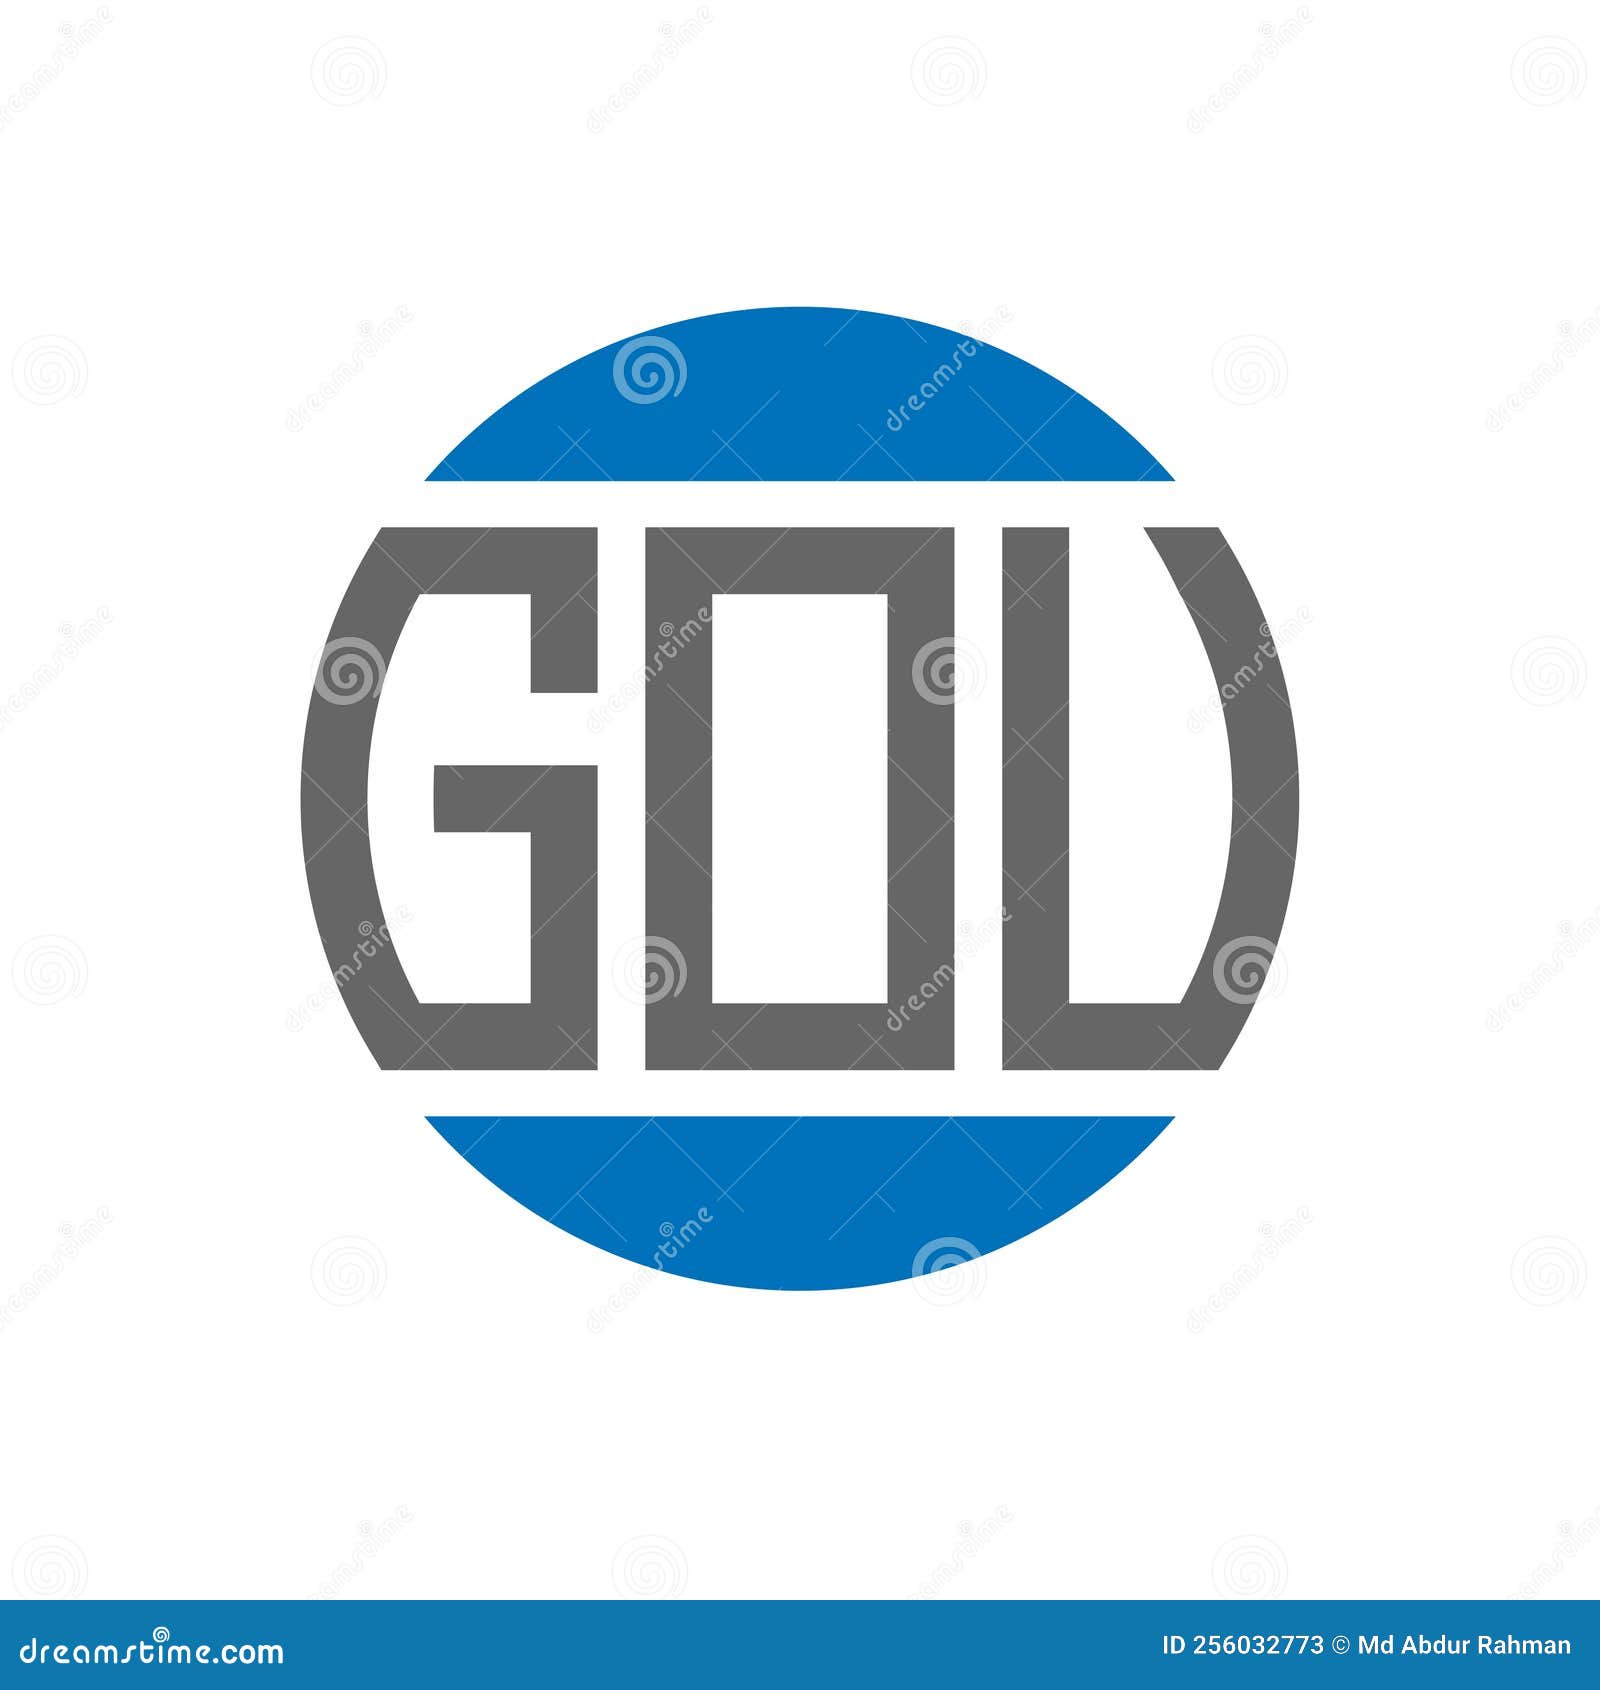 gov letter logo  on white background. gov creative initials circle logo concept. gov letter 